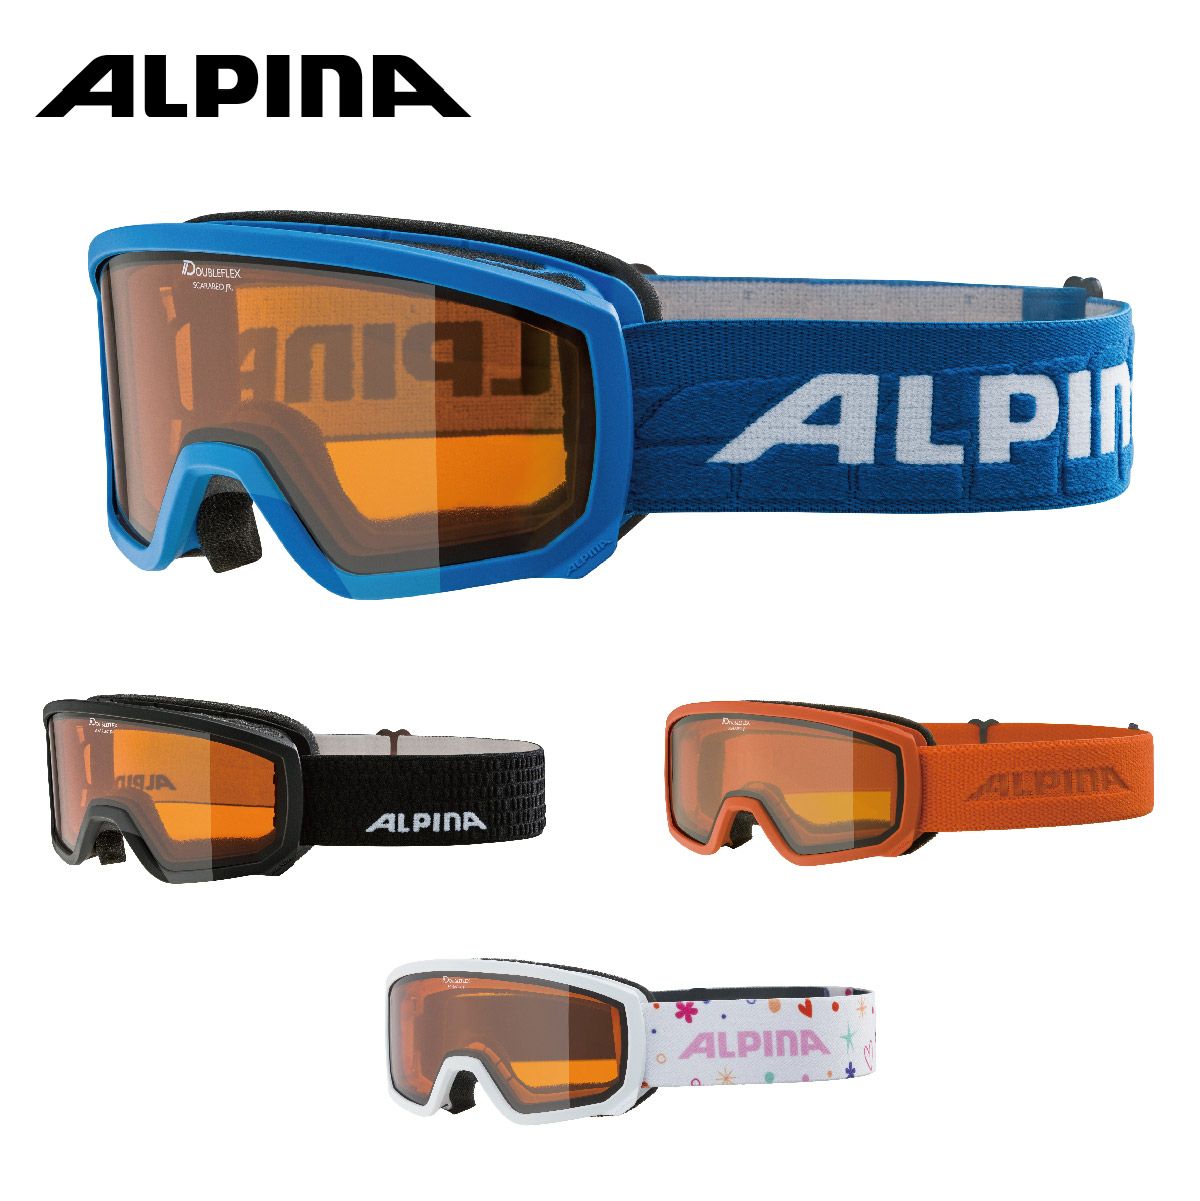 ALPINA(アルピナ) スキースノーボードゴーグル ユニセックス コンパクトタイプ ミラーレンズ メガネ使用可 ESTETICA Q LI